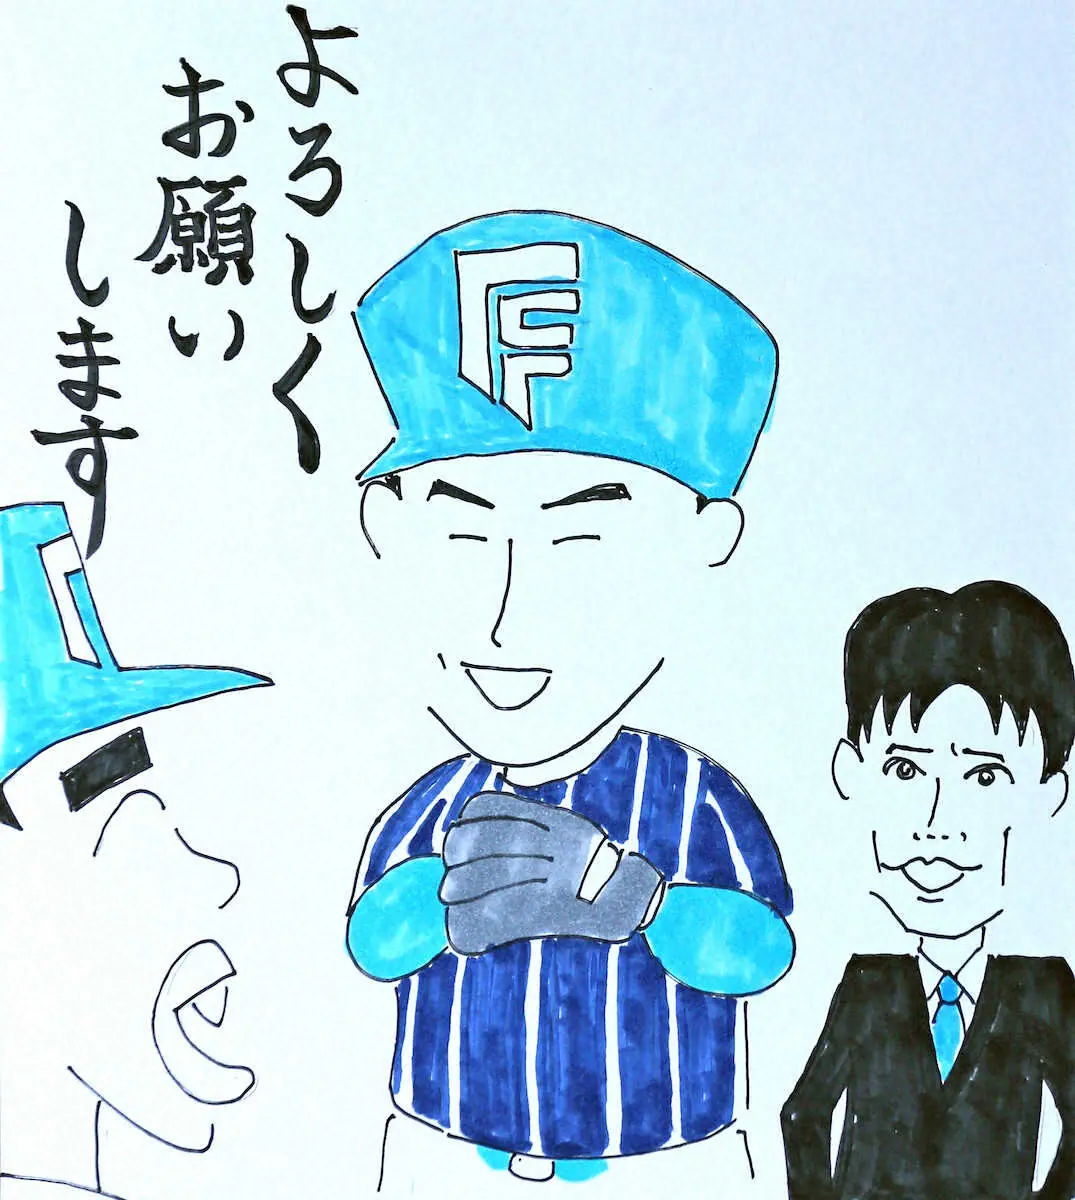 昨季限りで現役引退した長谷川凌汰氏と片岡奨人氏の現在を描いた木田画伯